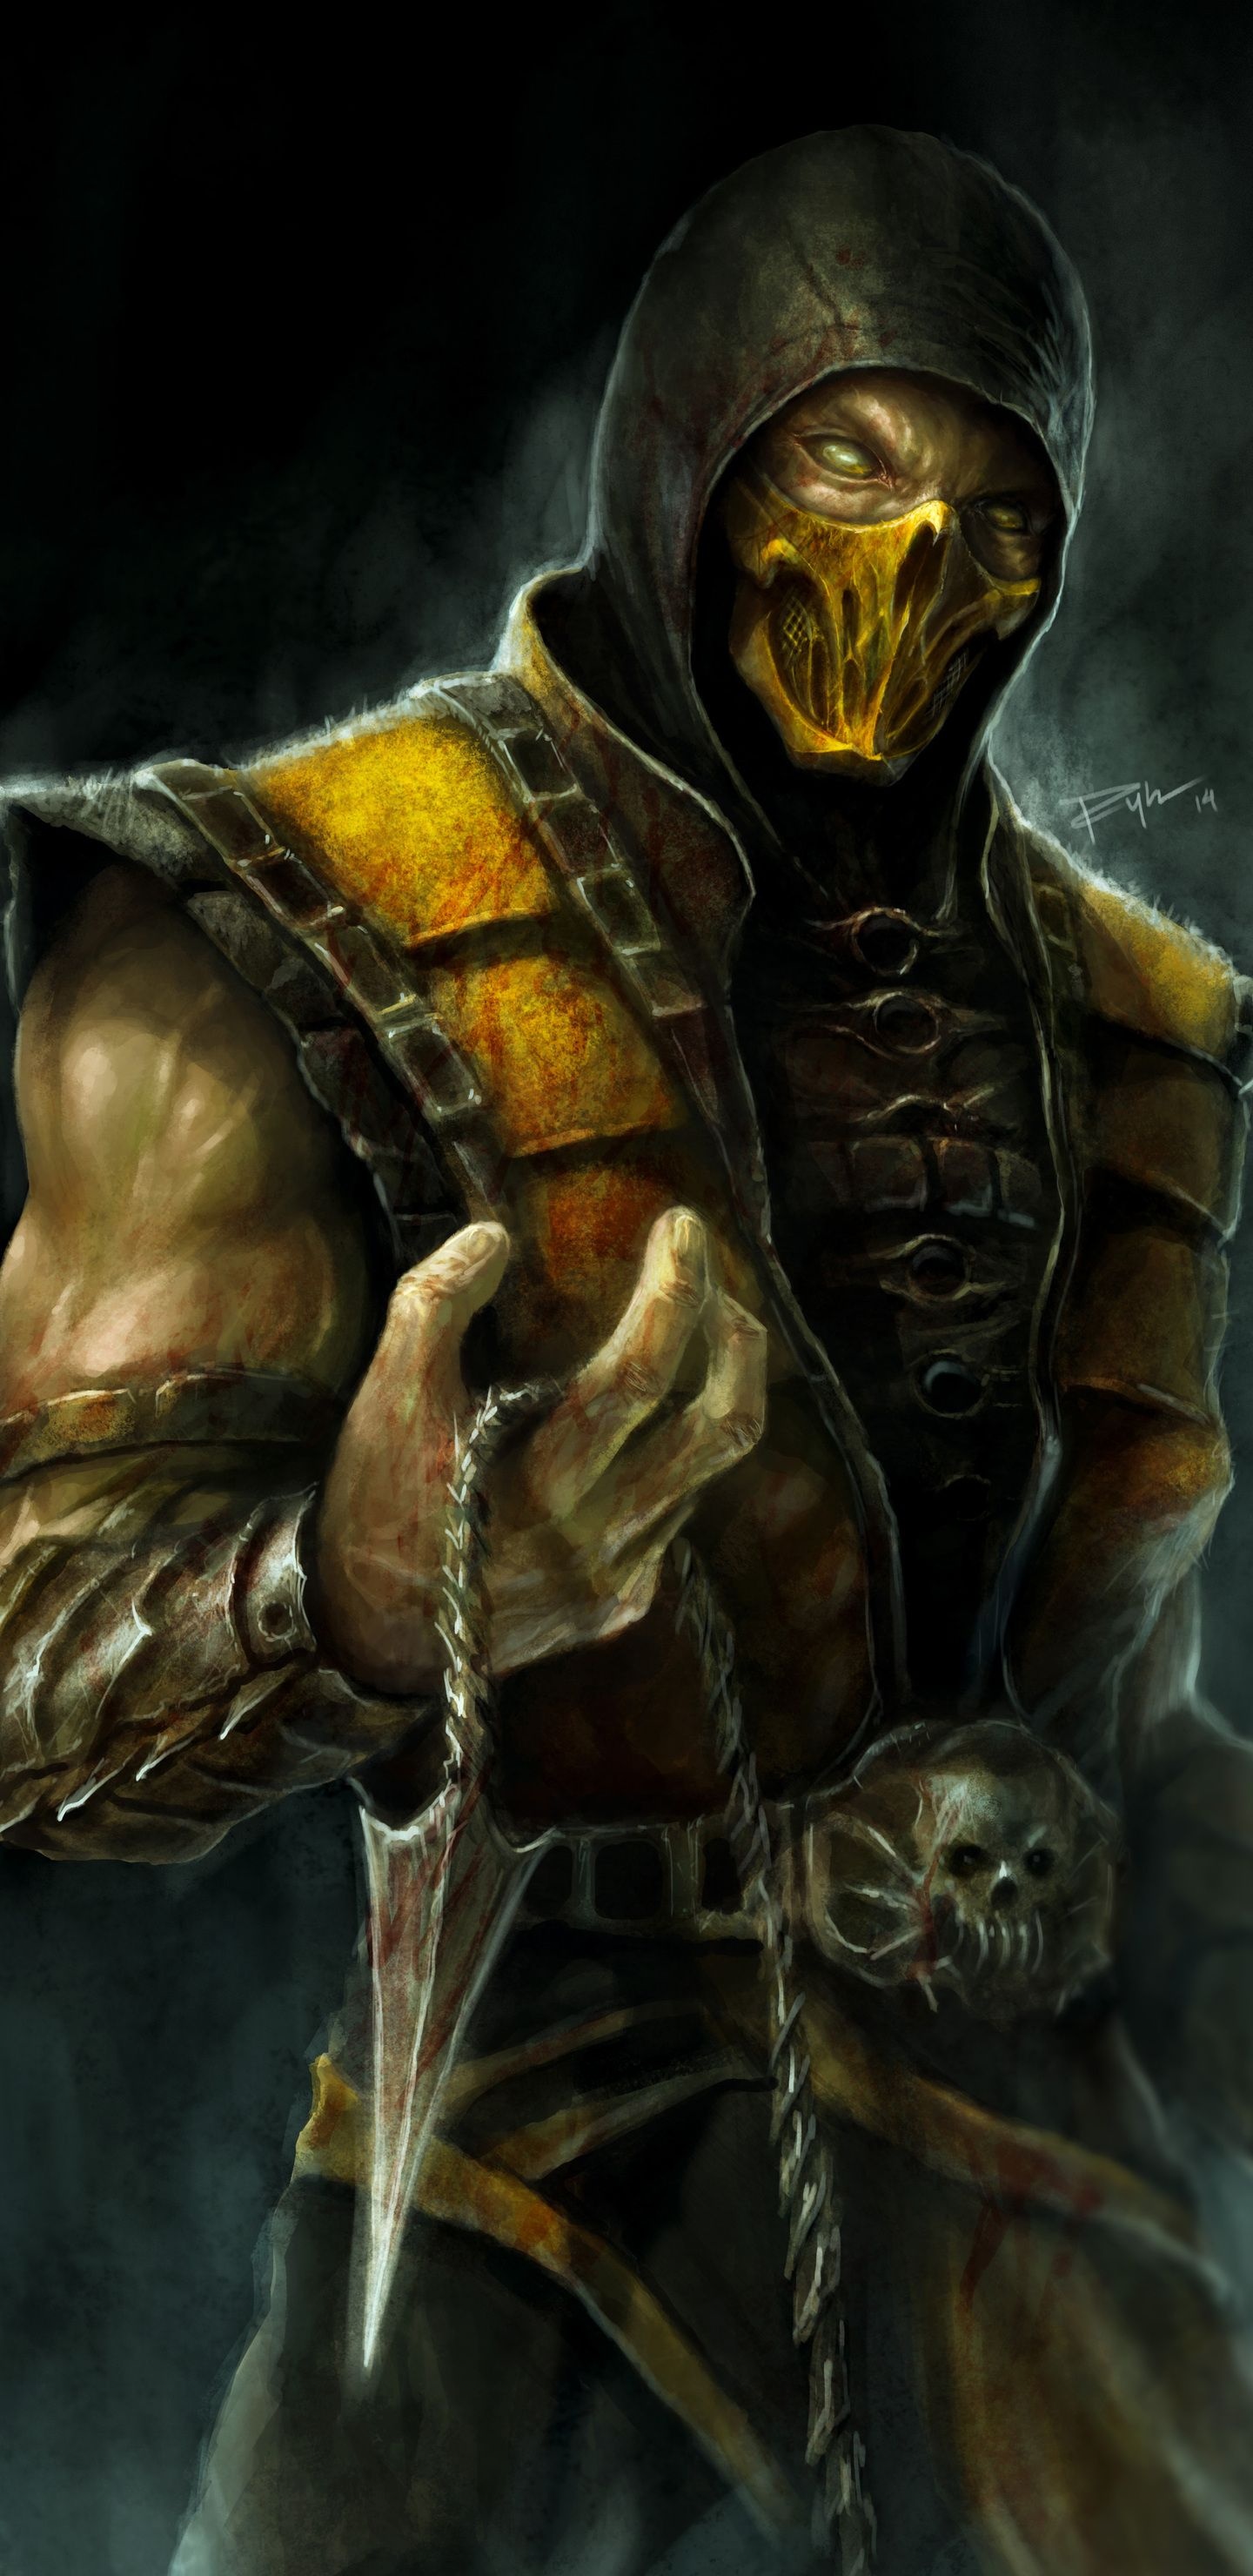 Scorpion, Mortal Kombat X, 4K artwork, Stunning visuals, 1440x2960 HD Phone